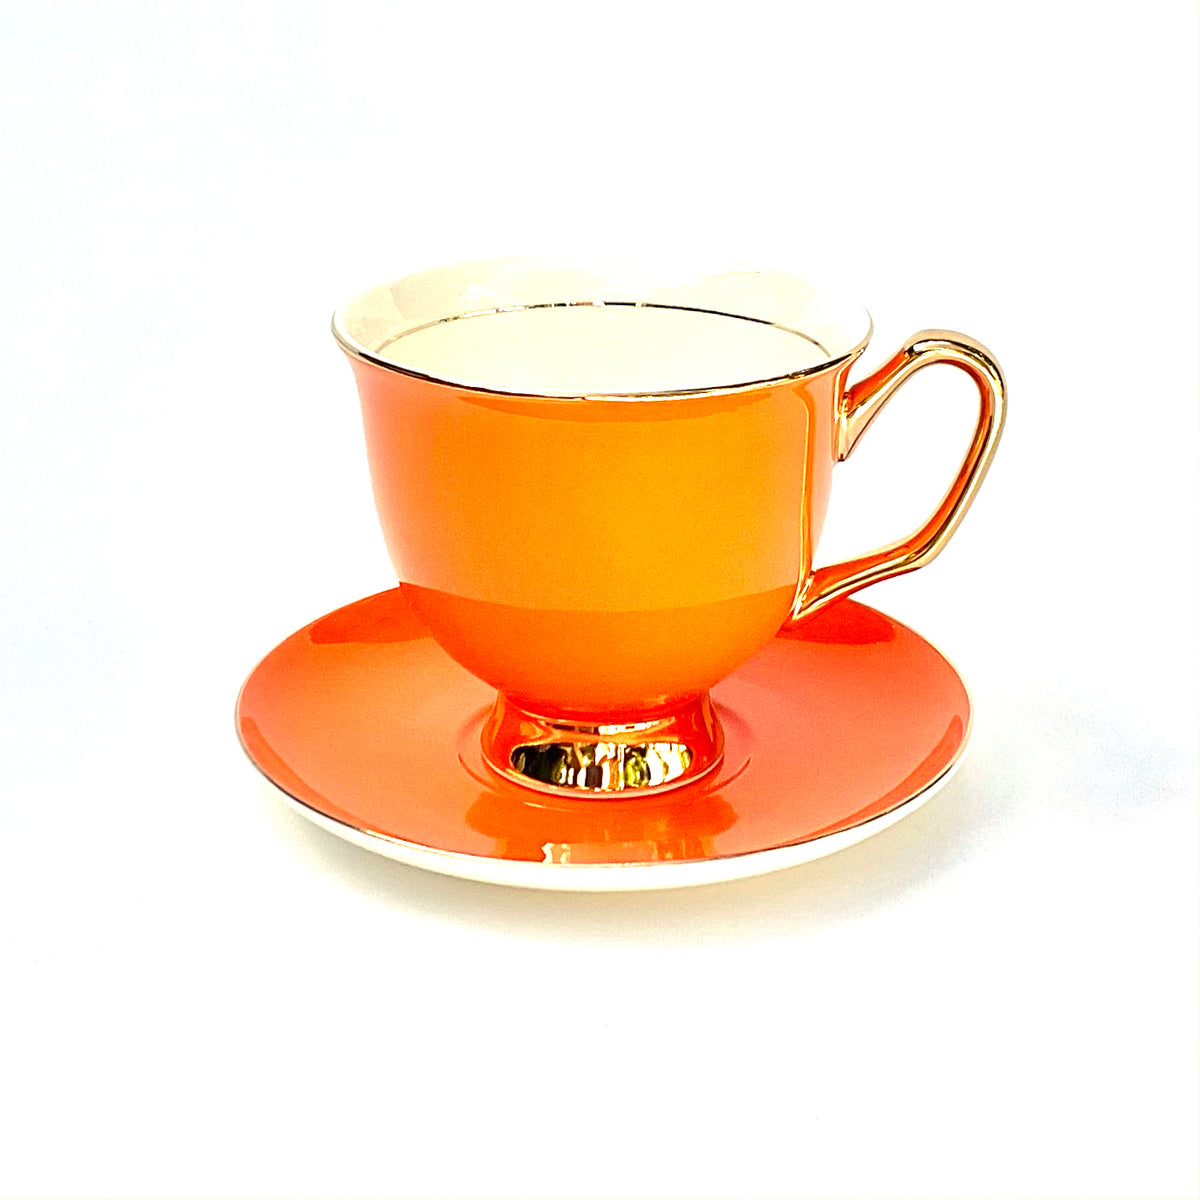 XL Orange Teacup and Saucer